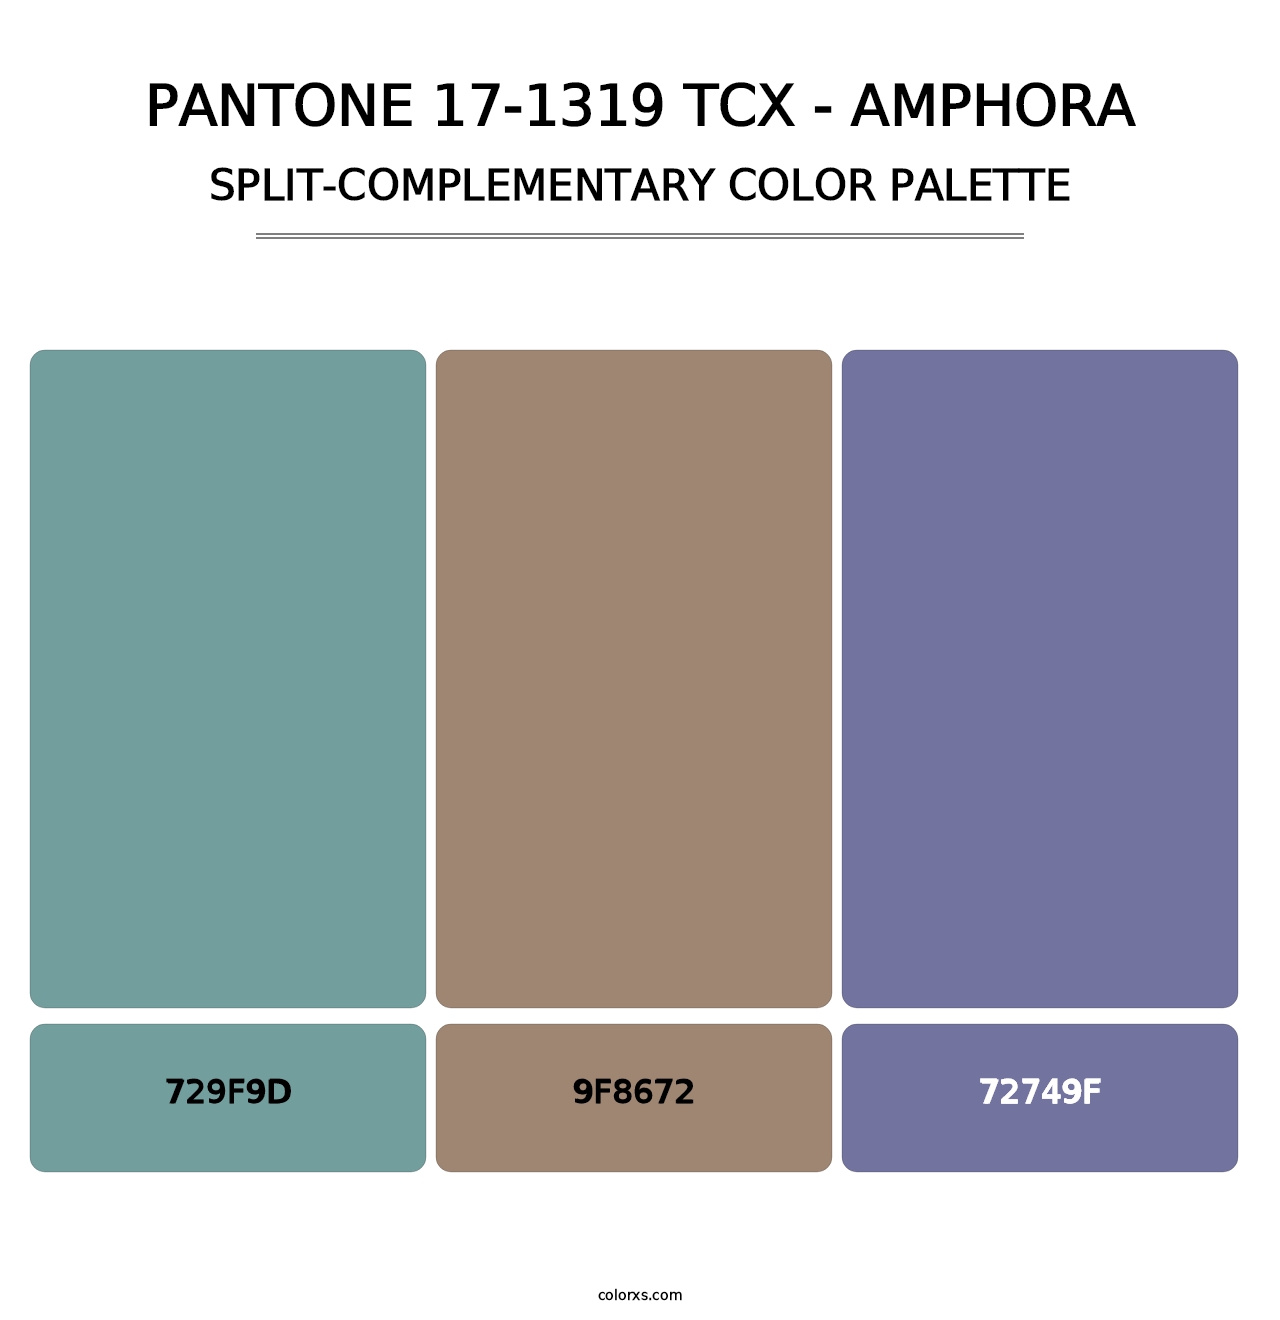 PANTONE 17-1319 TCX - Amphora - Split-Complementary Color Palette